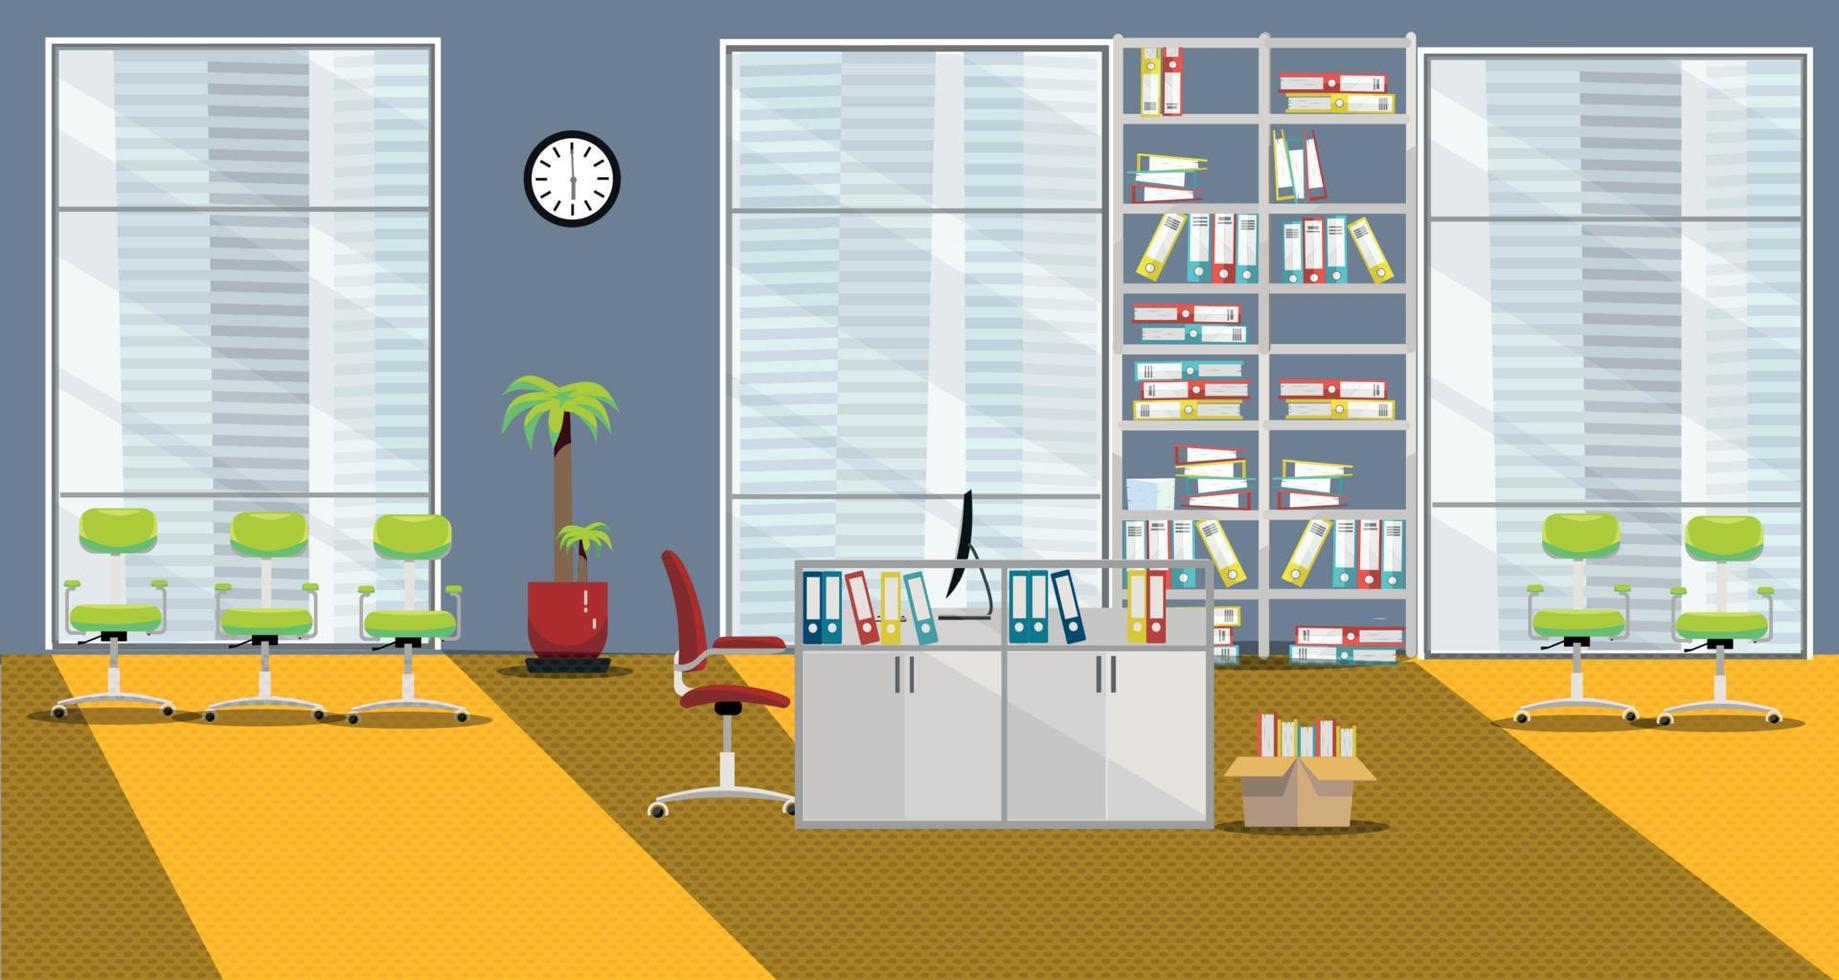 platt vektor illustration av modern skåp interiör med 1 tabell och 3 stor fönster i skyskrapa i orange-grå färger. öppen Plats med handflatan träd, hyllor för mappar, Sol okej, stolar för besökare